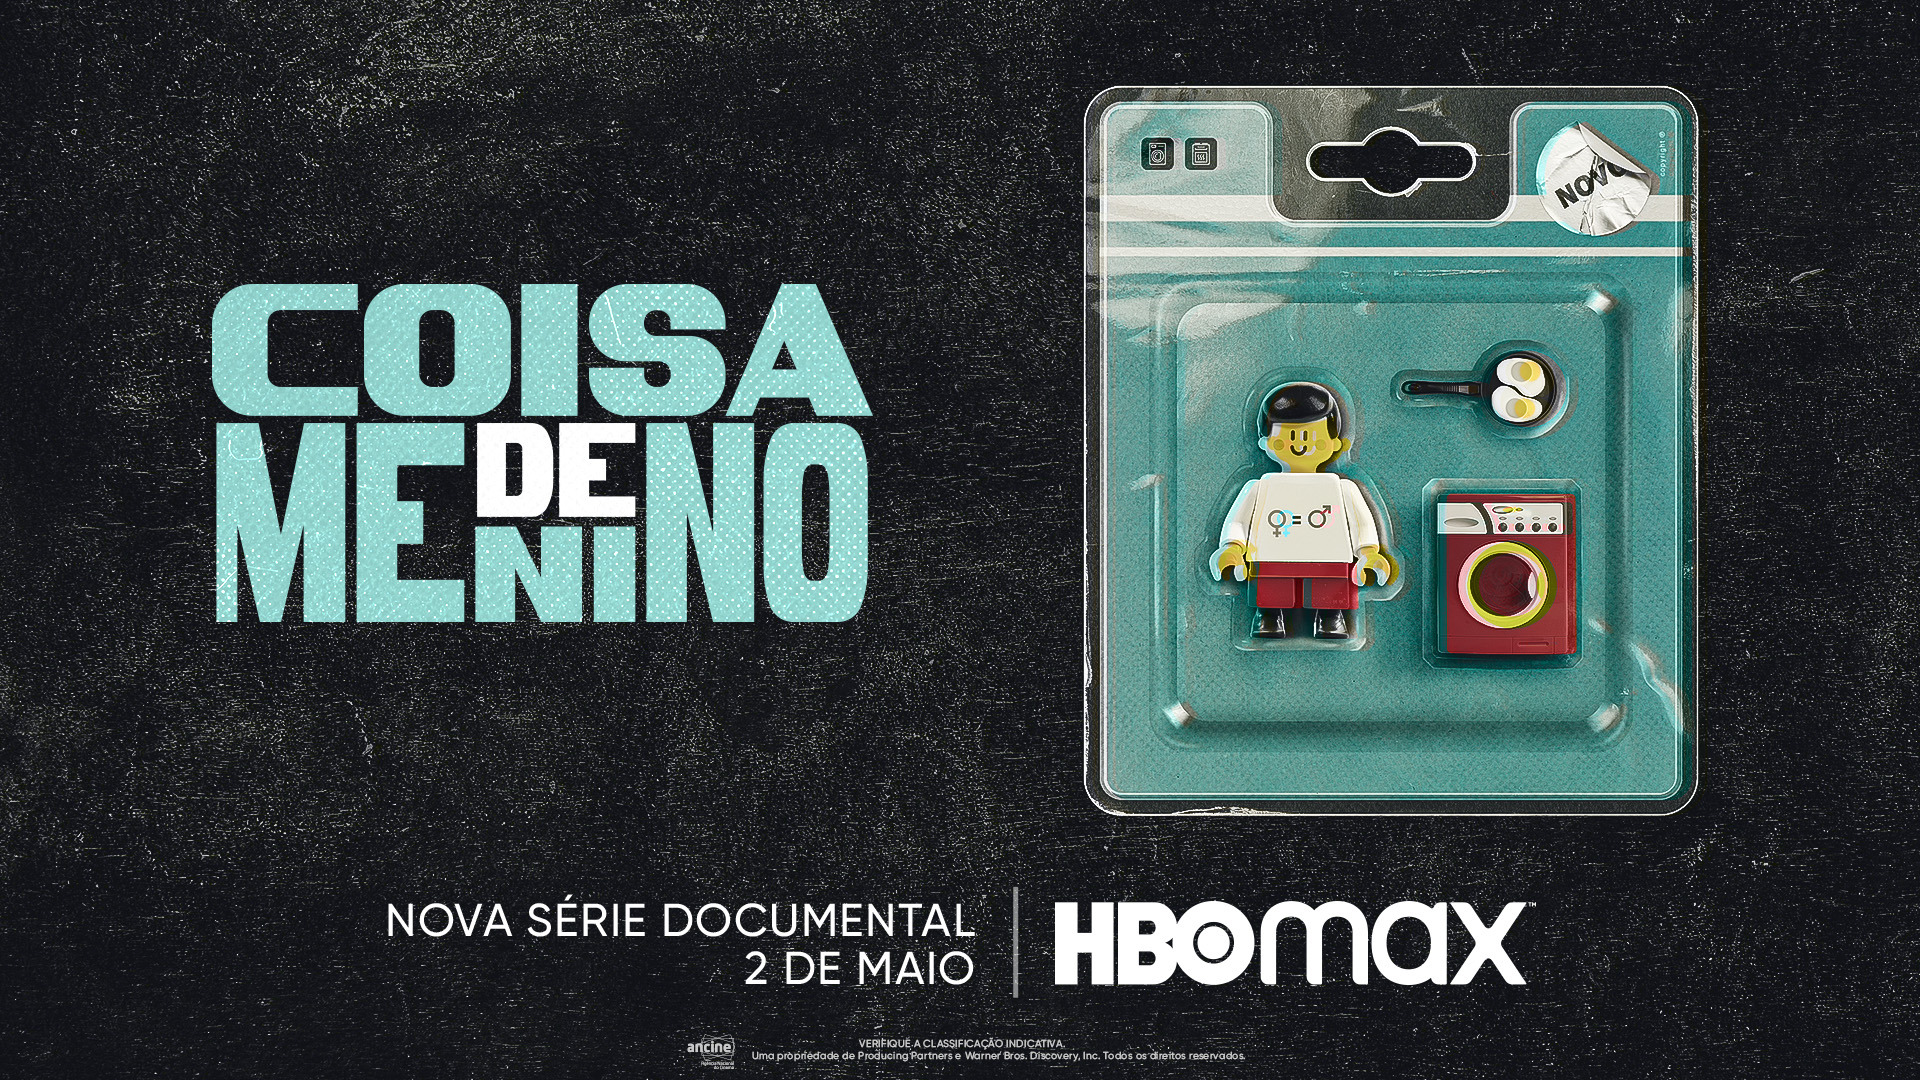 As séries brasileiras disponíveis no HBOMax: escolha a sua!